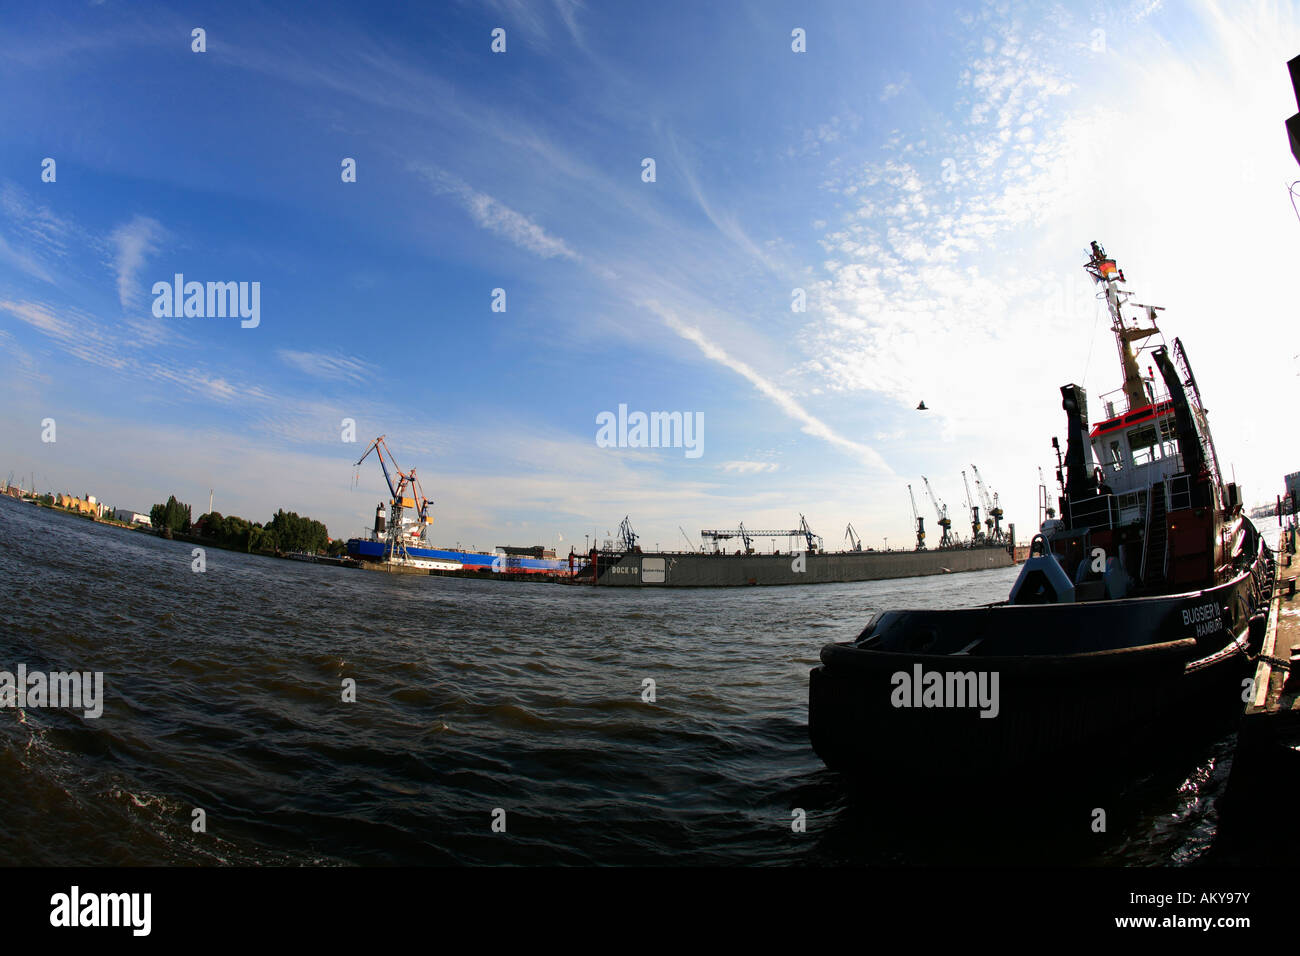 Tugboat in the Hamburg Harbour, Hamburg, Germany Stock Photo